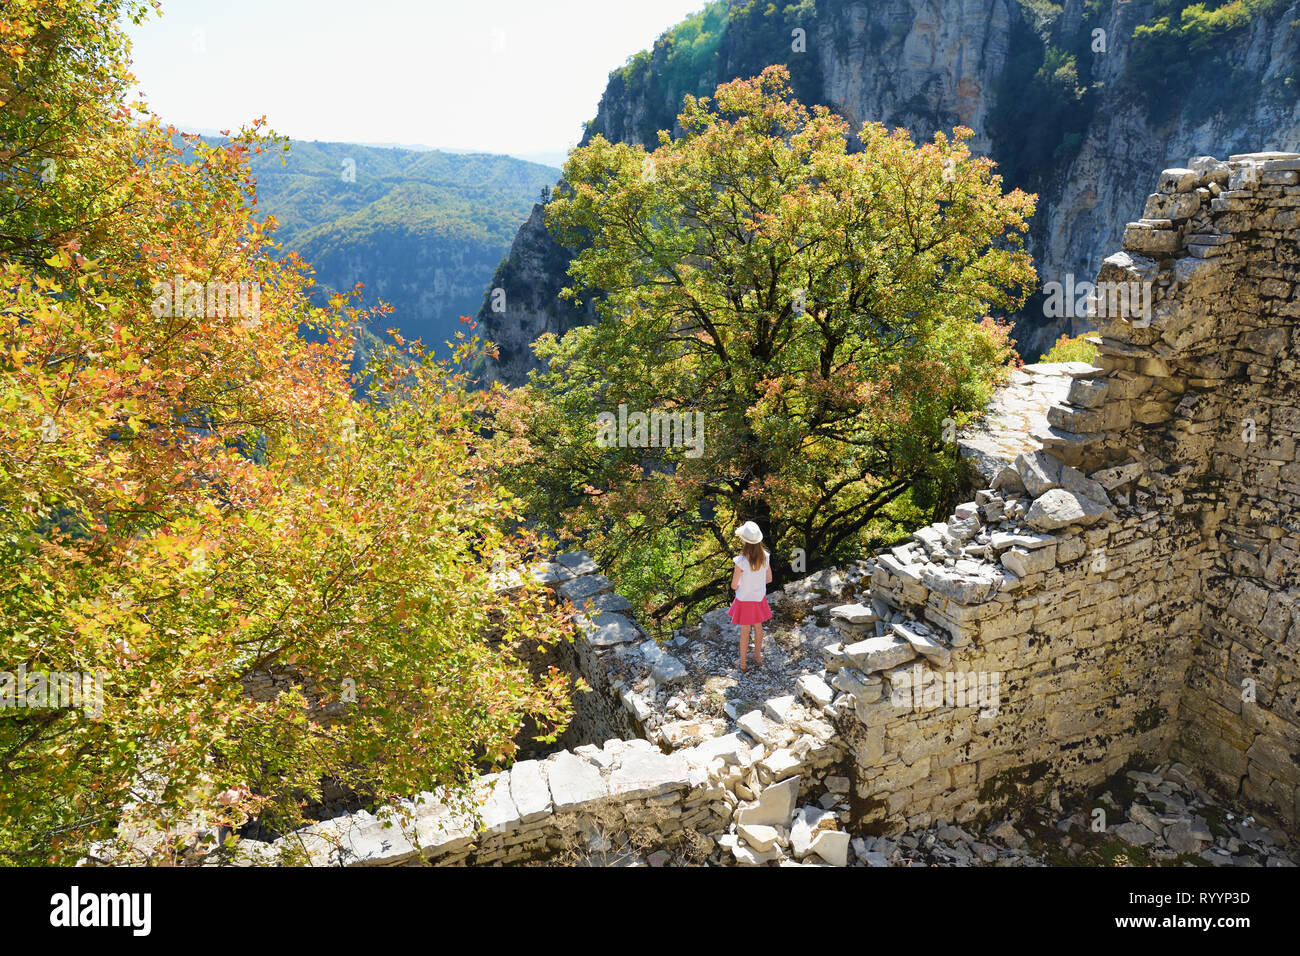 Ragazza giovane esplorare Monodendri village con i suoi tradizionali costruzioni in pietra e camminamenti in pietra, Zagoria area, regione Epiro, il nord-ovest greco Foto Stock